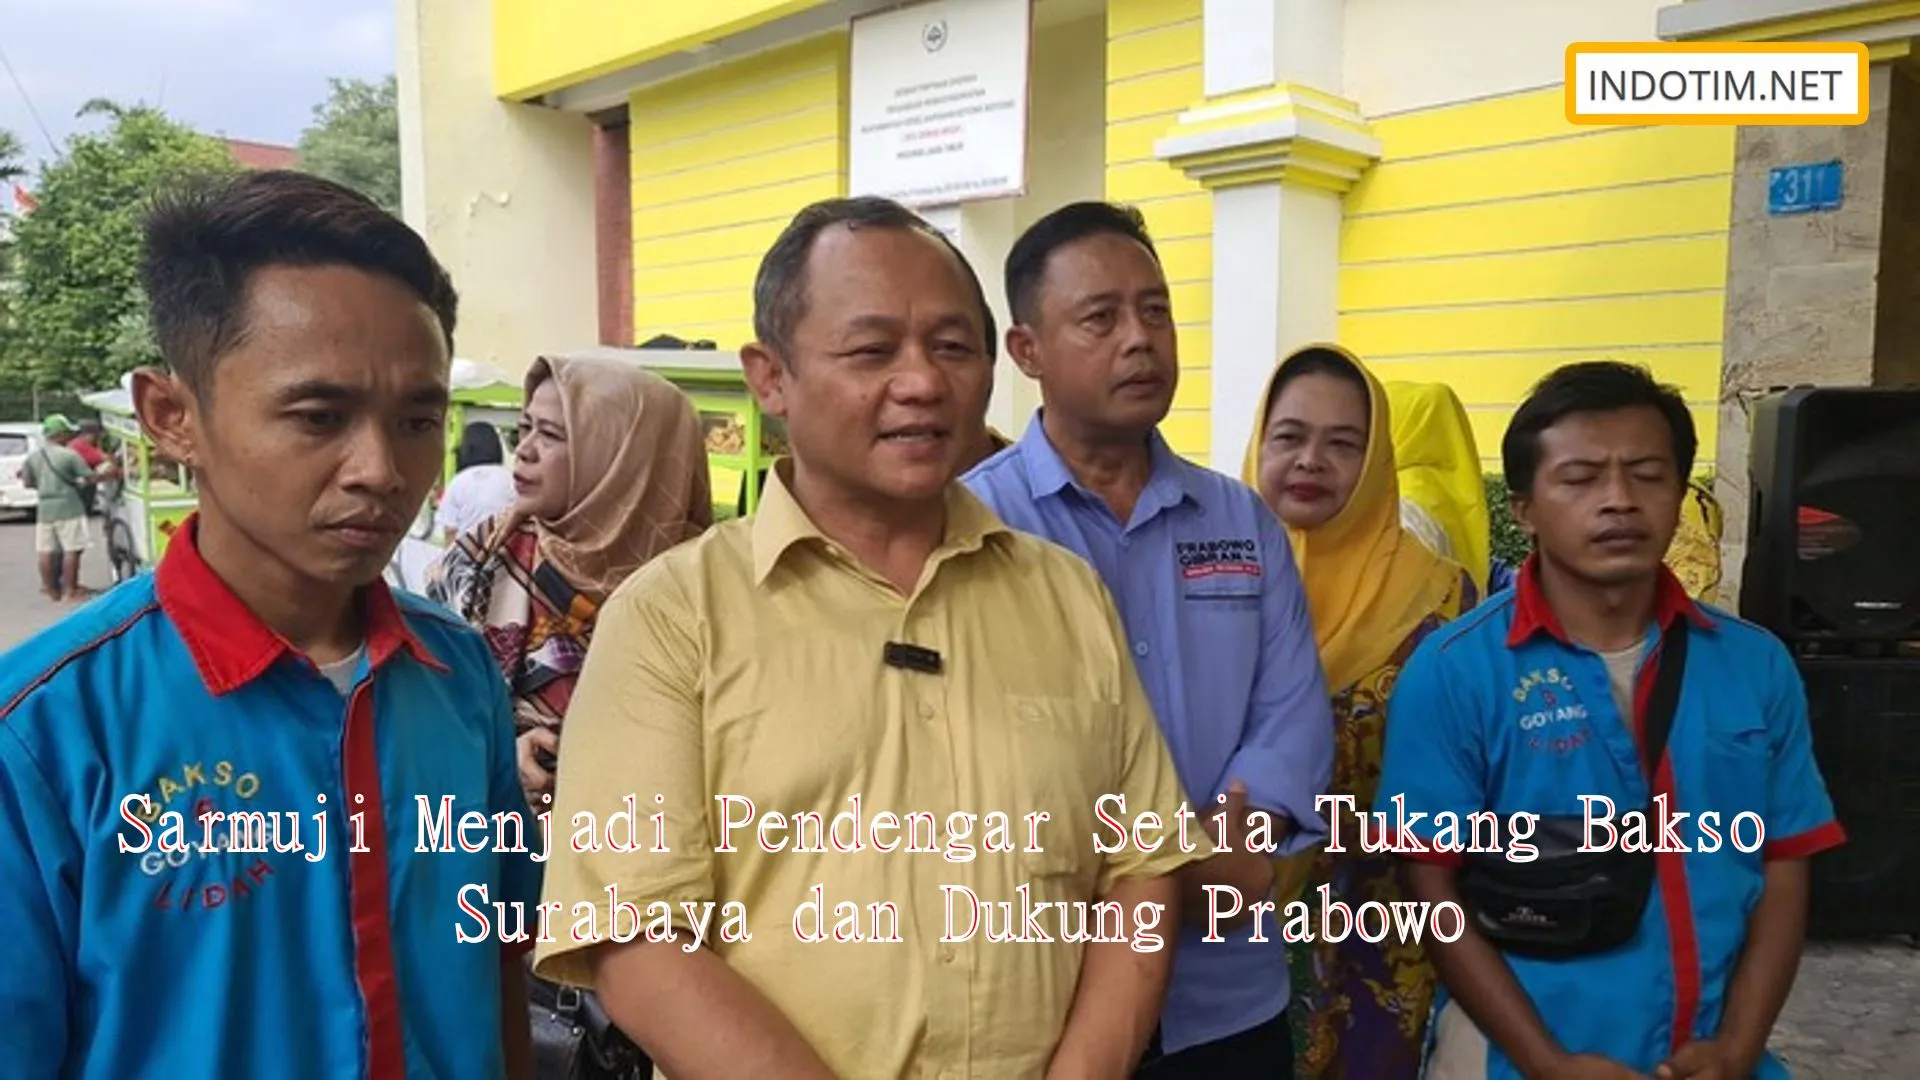 Sarmuji Menjadi Pendengar Setia Tukang Bakso Surabaya dan Dukung Prabowo